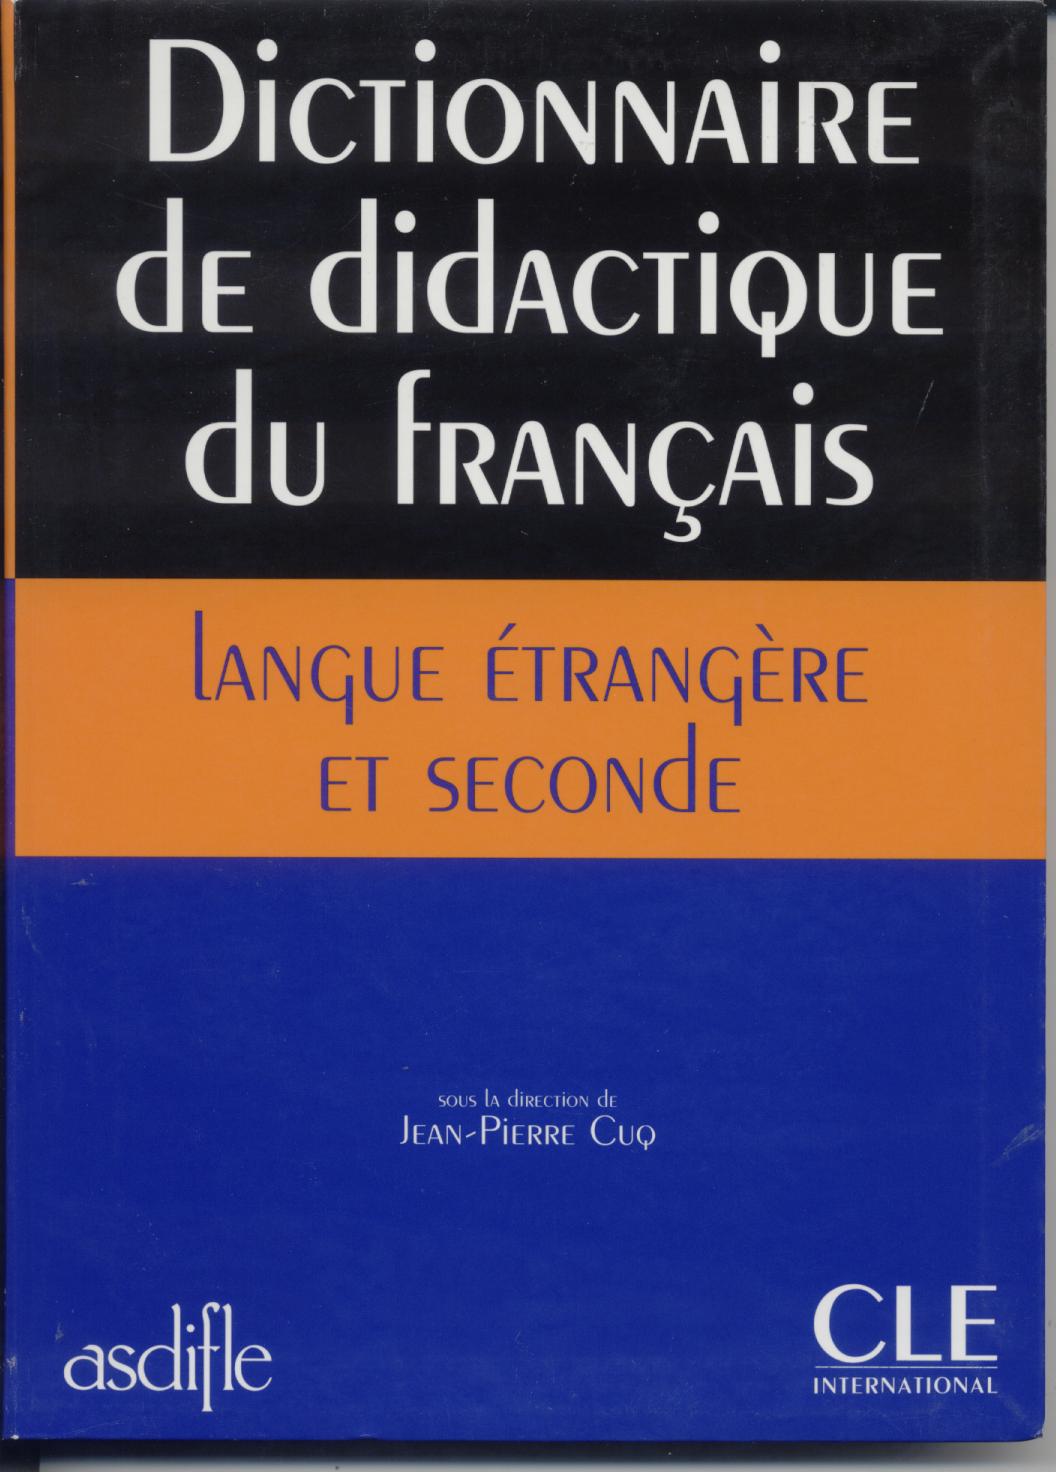 DICTIONNAIRE DIDACTIQUE DU FRANC